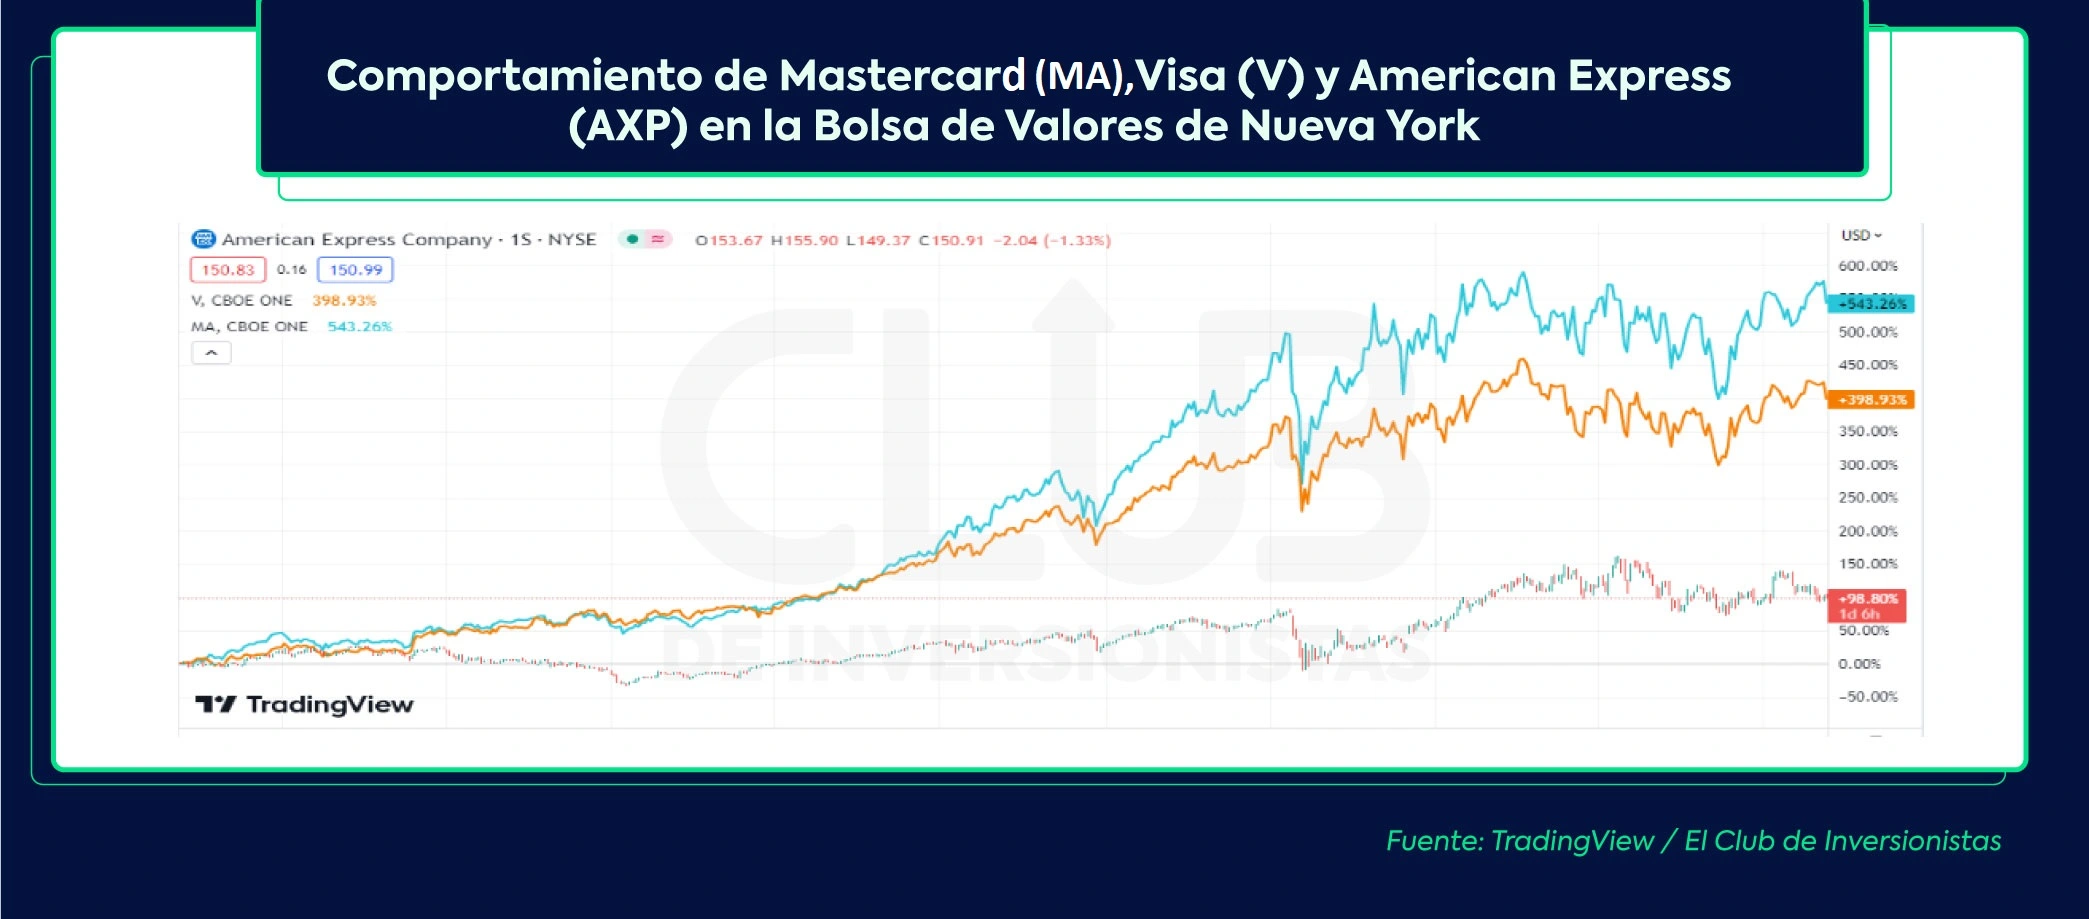 Comportamiento de los principales emisores de tarjetas de crédito en la Bolsa de Valores de Nueva York